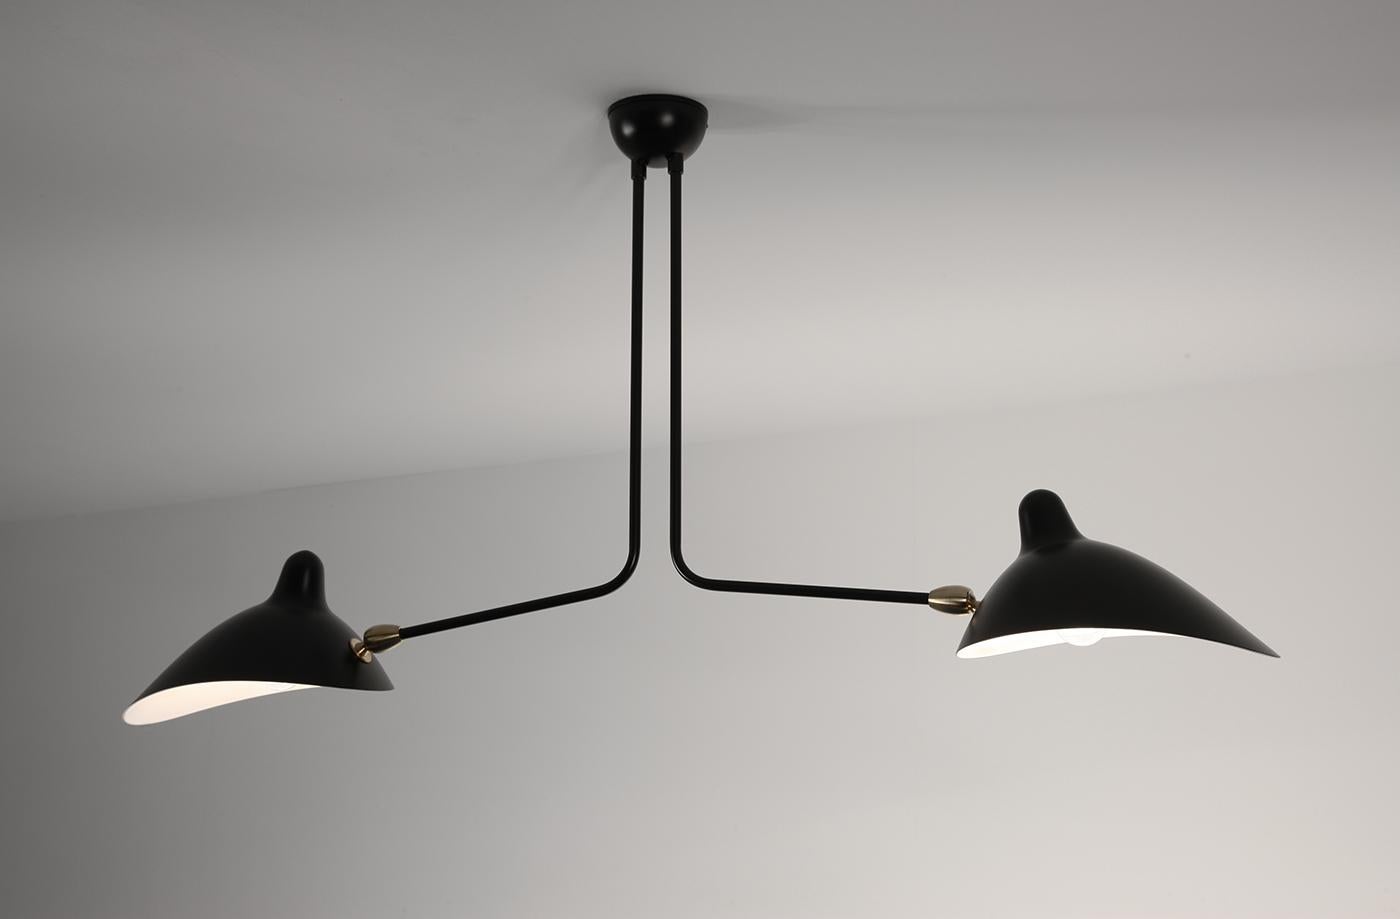 Modèle de plafonnier 'Two fixed arms Ceiling Lamp' conçu par Serge Mouille en 1959.

Fabriqué par les Editions Serge Mouille en France. La production des lampes, des appliques et des lampadaires est réalisée de manière artisanale avec les mêmes